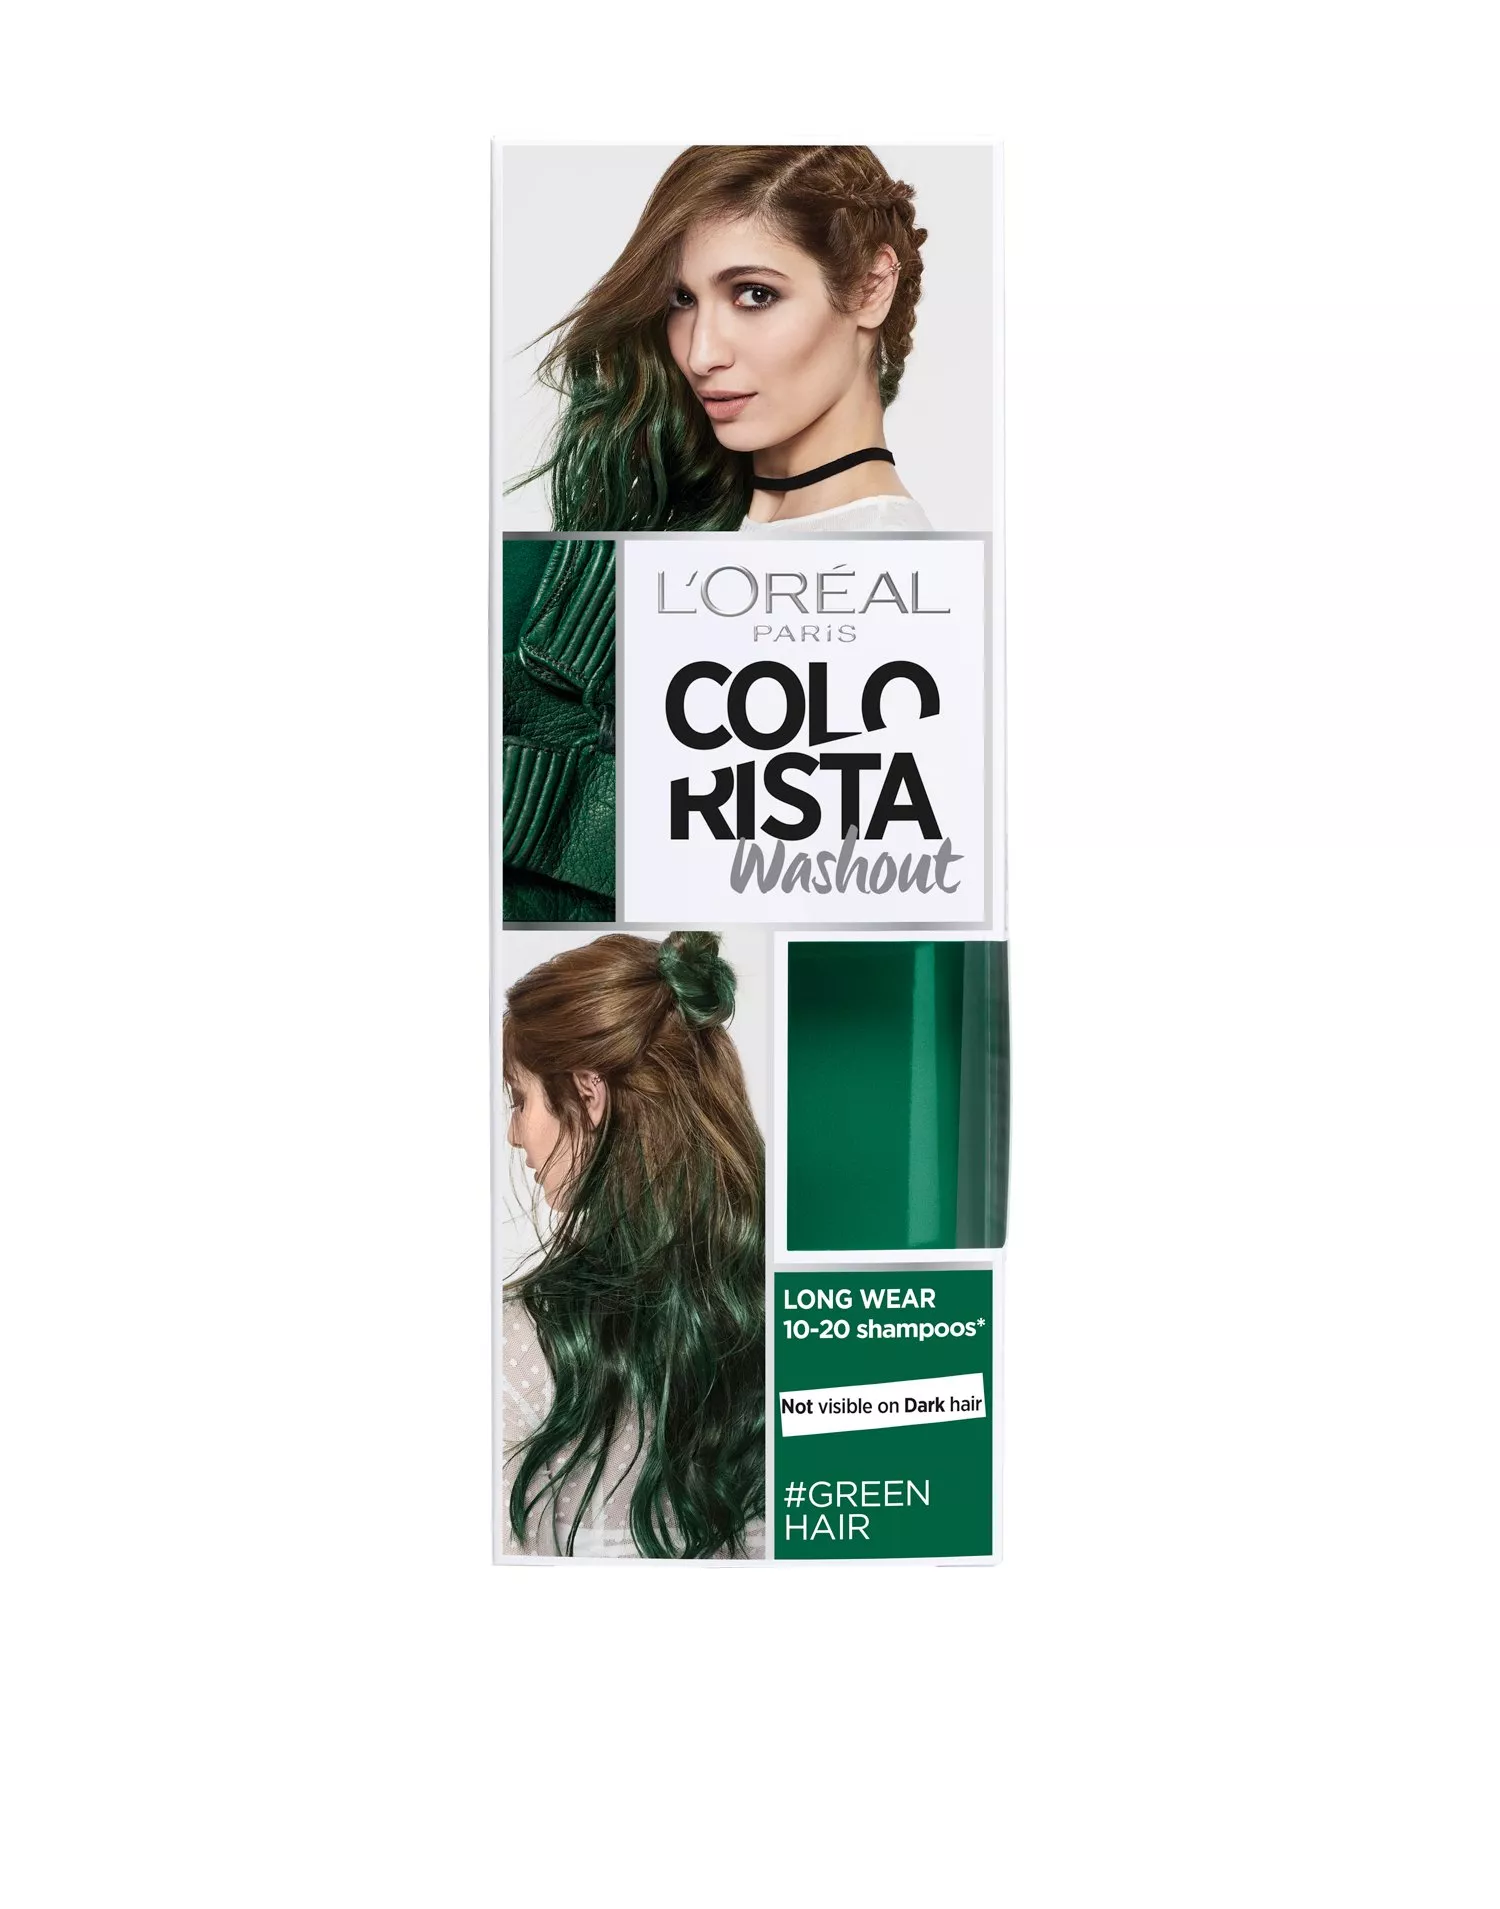 Gum Misvisende forbruger Køb L'Oréal Paris Colorista Washout - Green | Nelly.com